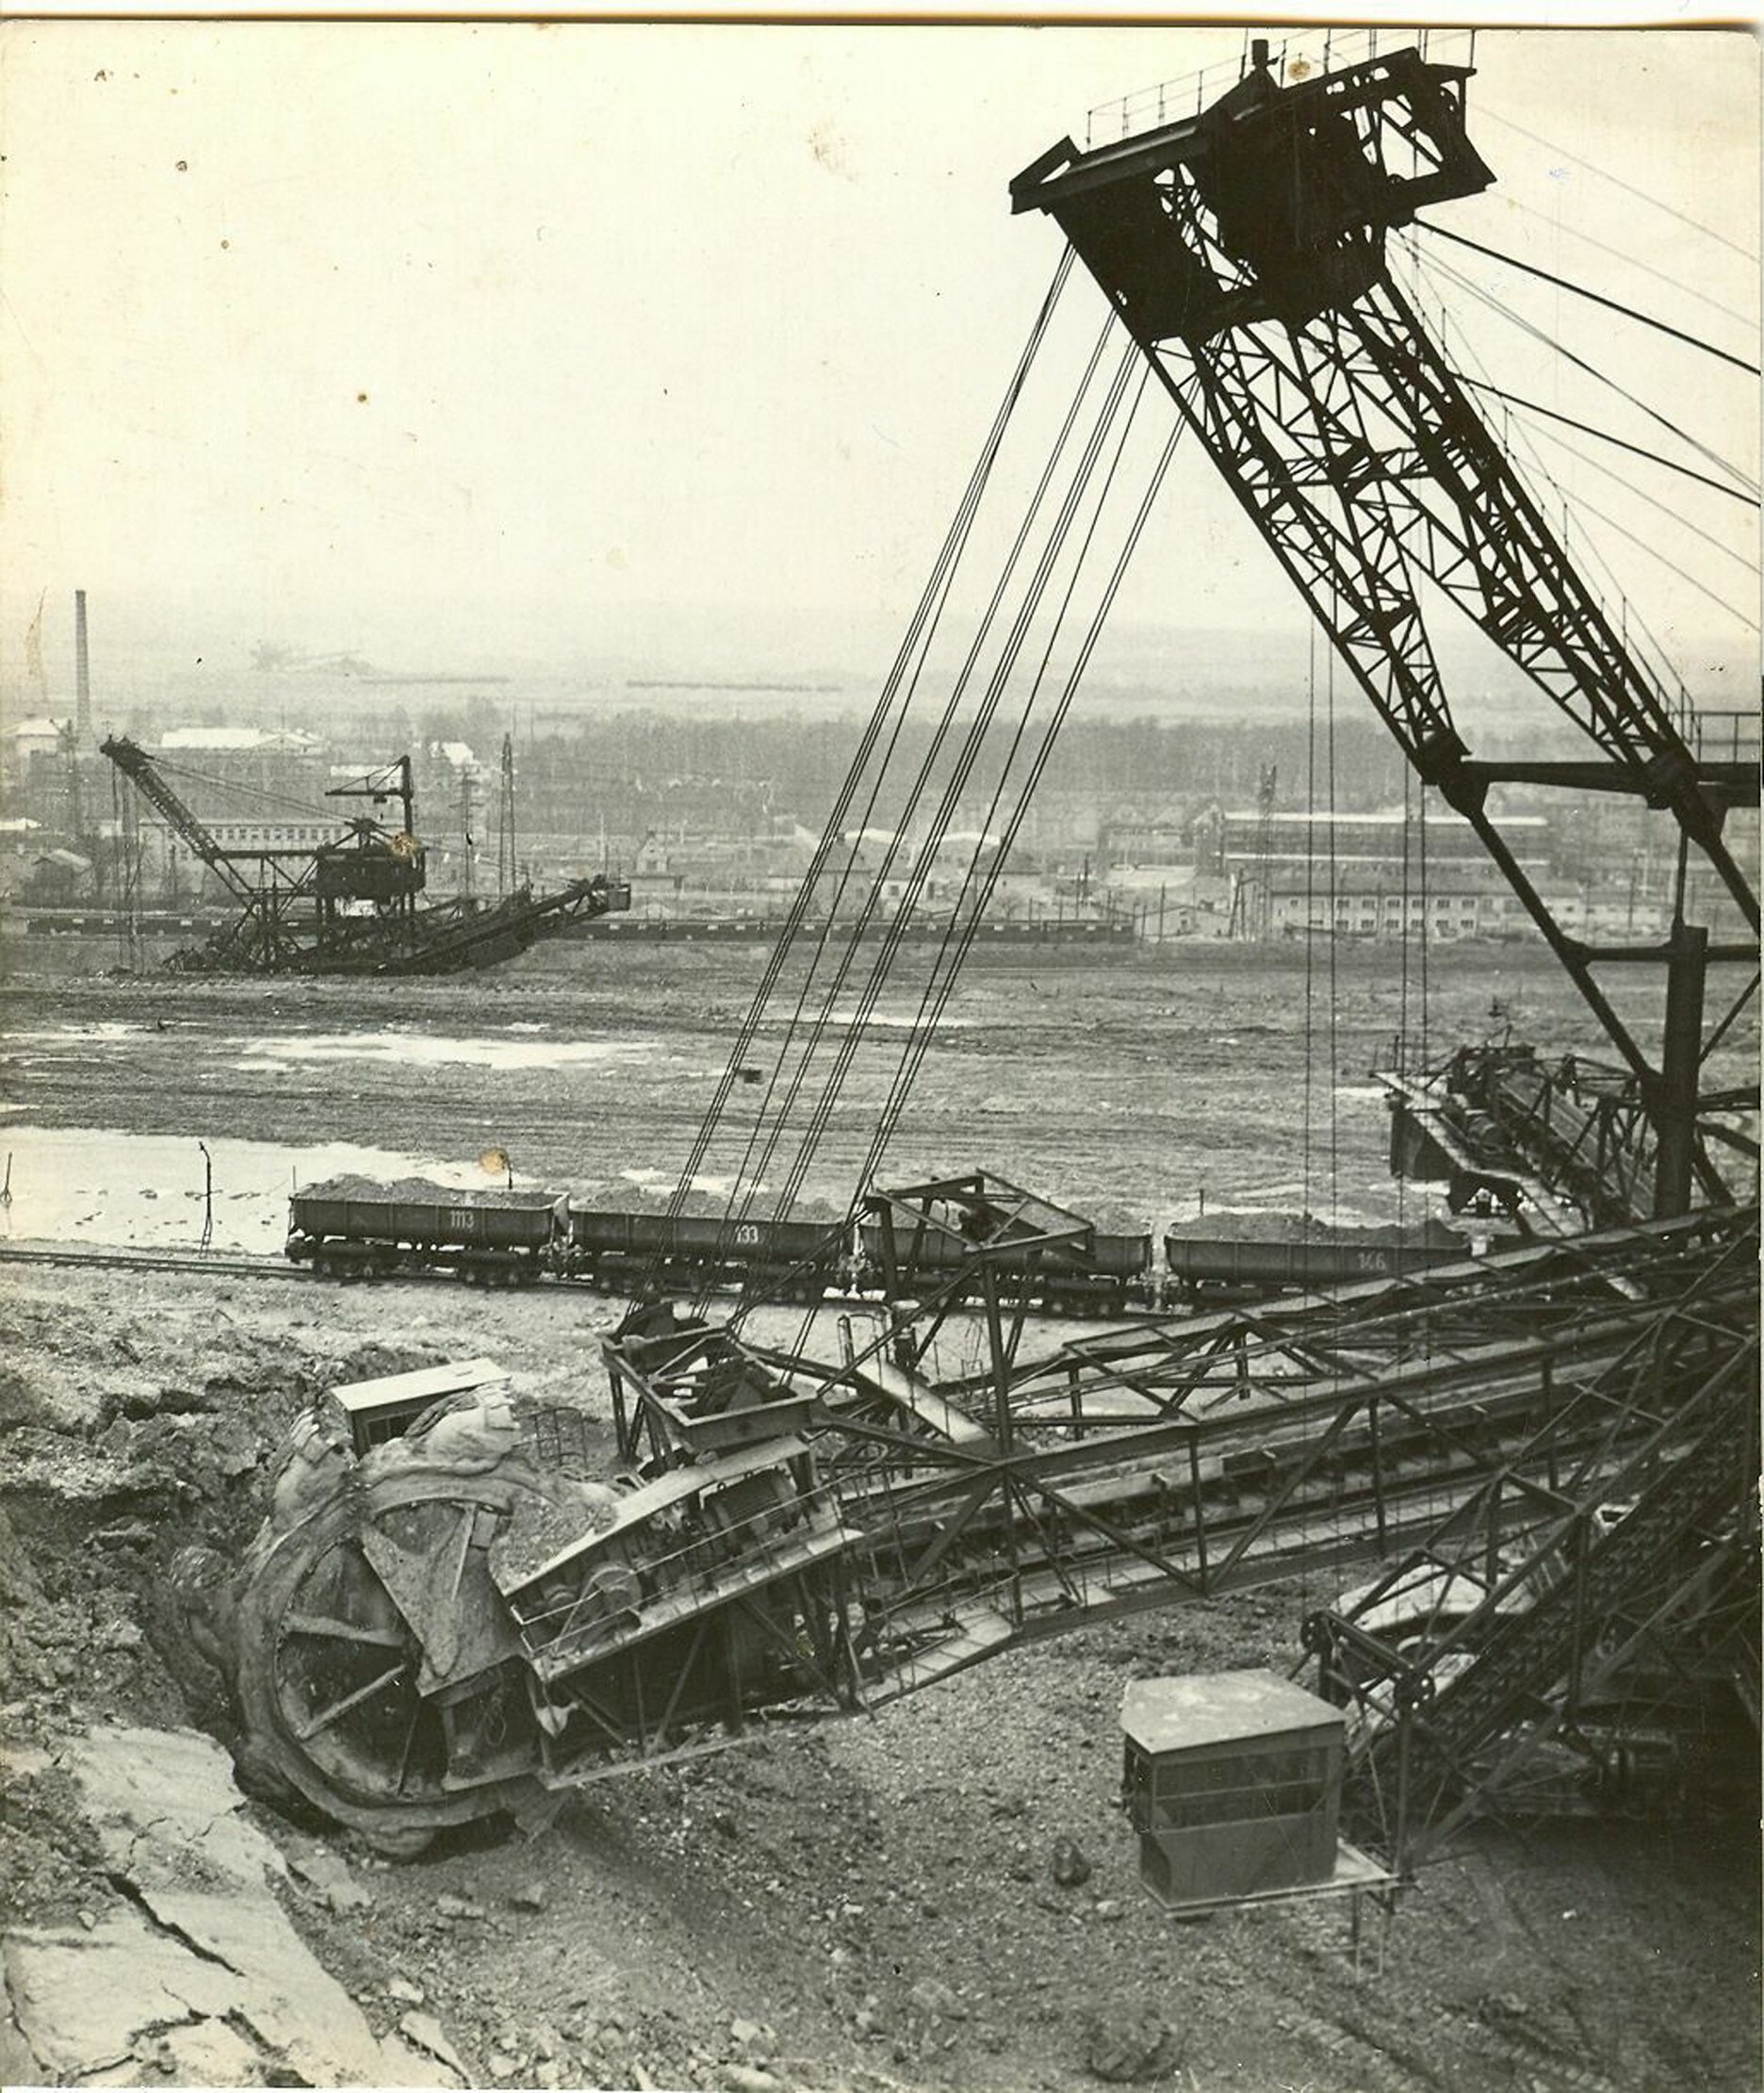 1960 Kolesové rýpadlo K1000-7 v lome Medard. V pozadí veľkostroj K1000-10. Zdroj: Podnikový archív Sokolovská uhelná